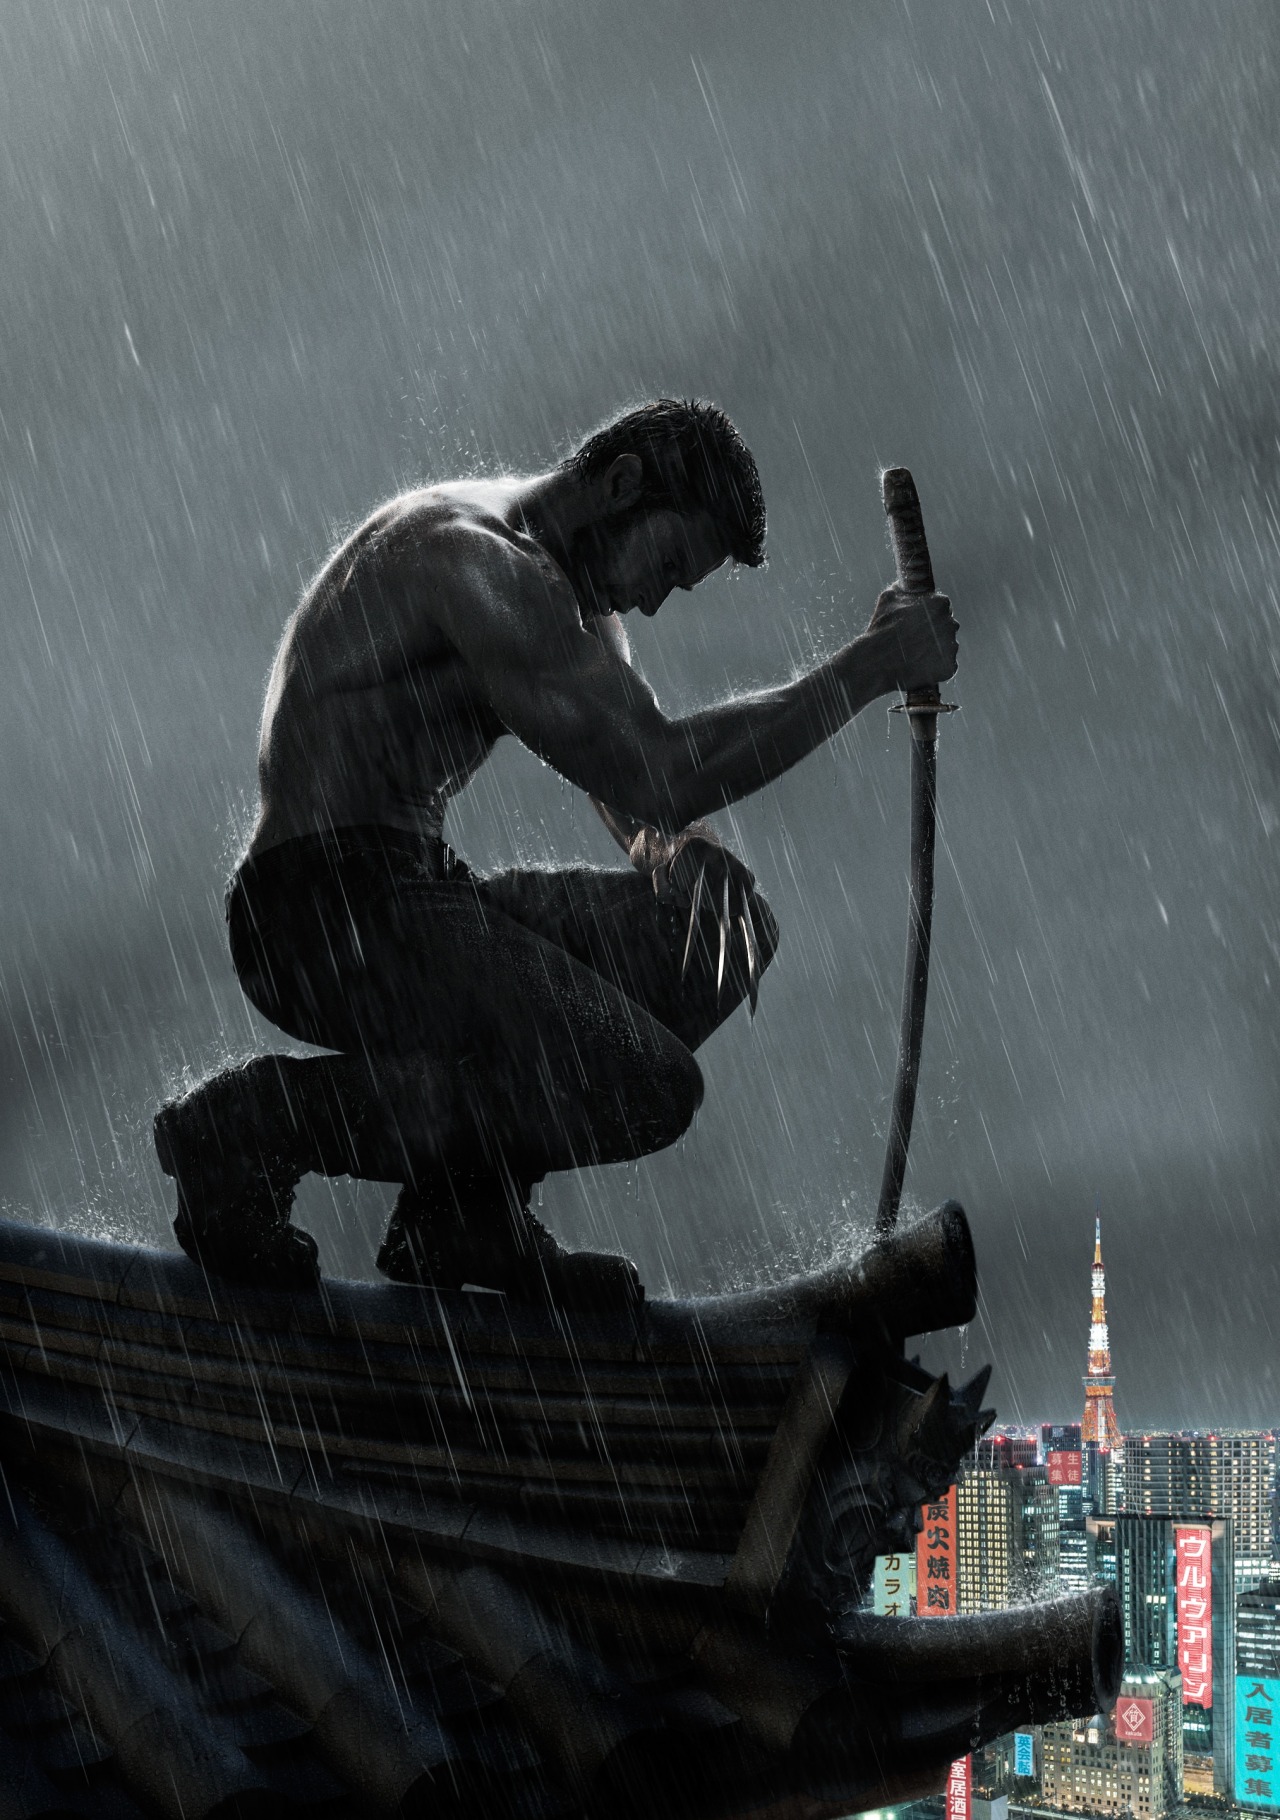 La nueva entrega de &#8220;The Wolverine&#8221; se filmará en Japón
Twentieth Century Fox lanzó un póster promocional de la nueva entrega de The Wolverine, sorprendiendo a todos al subir a su protagonista al tejado en un paisaje que sin lugar a dudas es en Japón.
Esta imagen deja entrever el oscuro desafío al que tendrá que enfrentarse Wolverine en esta encrucijada, que toma como espacio las tierras orientales de Japón, a las que acude para entrenar sus garras y aprender el arte de la katana samurai.
Según comentó el director, James Mangold, durante una entrevista, el filme contará los hechos que suceden después de la anterior cinta, X-Men Origins: Wolverine. No obstante, esta secuela pretenderá desviarse de la línea argumental de la franquicia de Marvel para evitar mayores asociaciones con ella.
Mark Bomback y Christopher McQuarrie son los guionistas encargados de la adaptación de la historia original que fue creada por los escritores Christopher Claremont y Frank Miller. 
El reparto además del protagonista, Hugh Jackman, también cuenta con actores como Brian Tee y Svetlana Khodchenkova, así como una gran parte de intérpretes japoneses como Will Yung Lee, Hiroyuki Sanada y Rila Fukushima, entre otros.
Se espera el estreno para el 26 de julio de 2013.
Vía YC